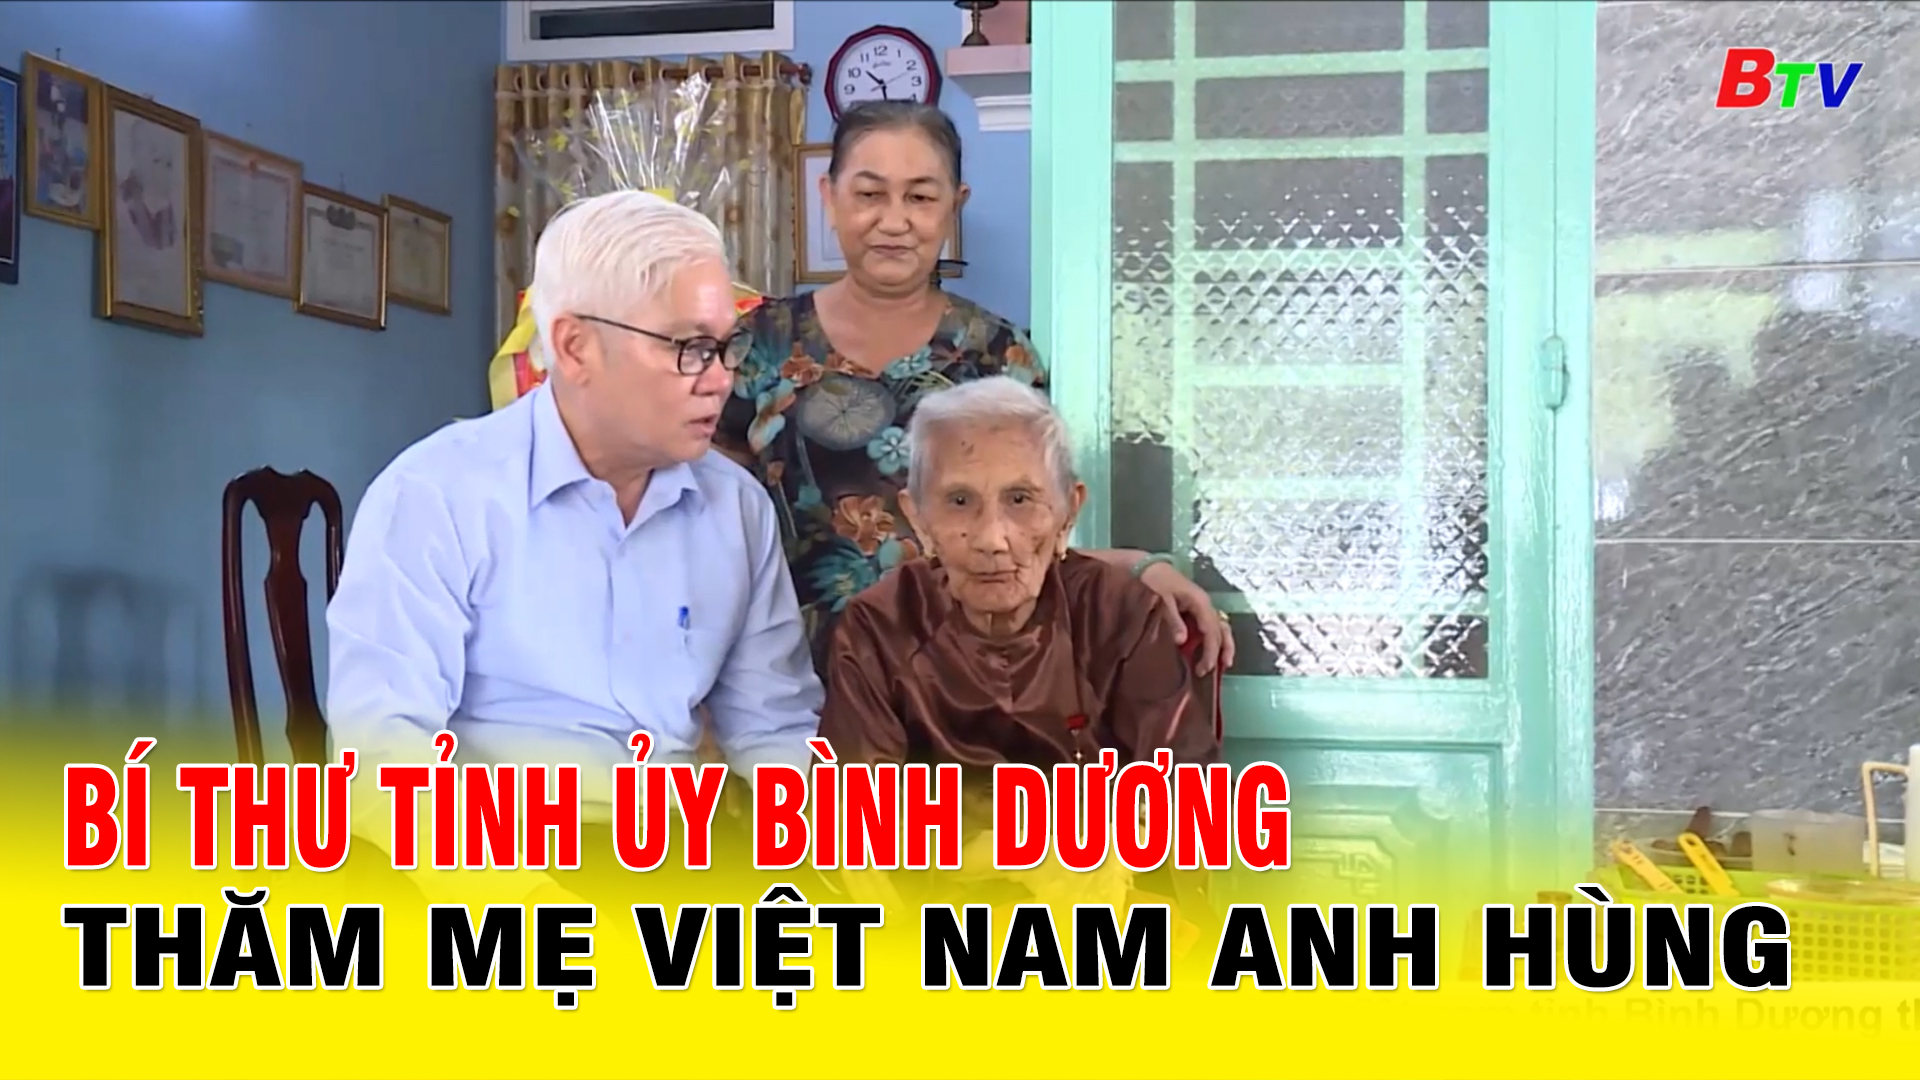 Bí thư Tỉnh ủy Bình Dương thăm Mẹ Việt Nam anh hùng